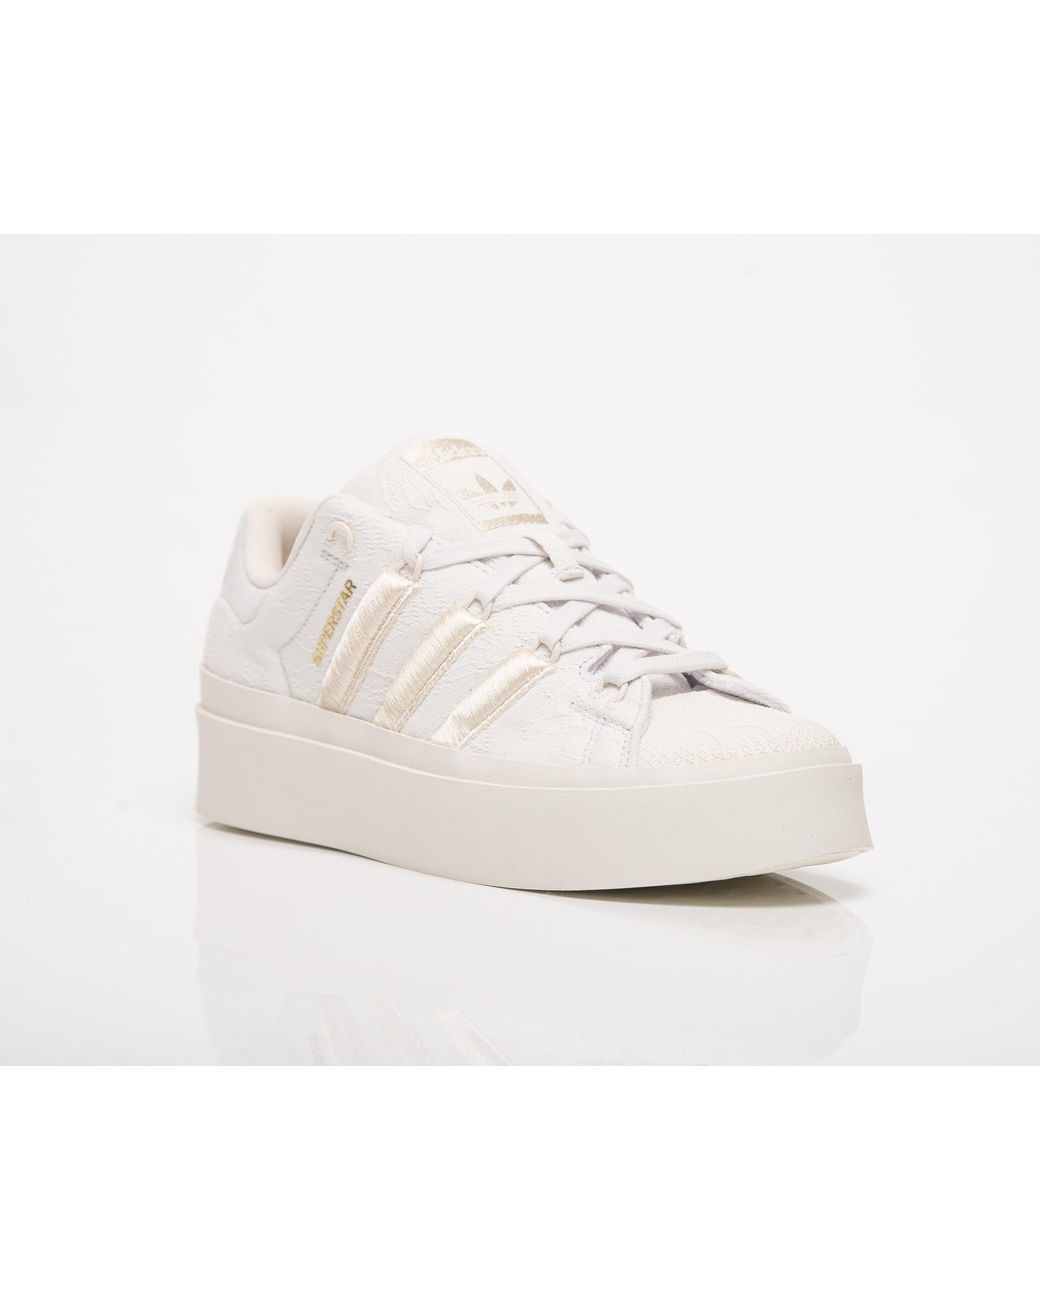 adidas Originals Superstar Bonega in White | Lyst